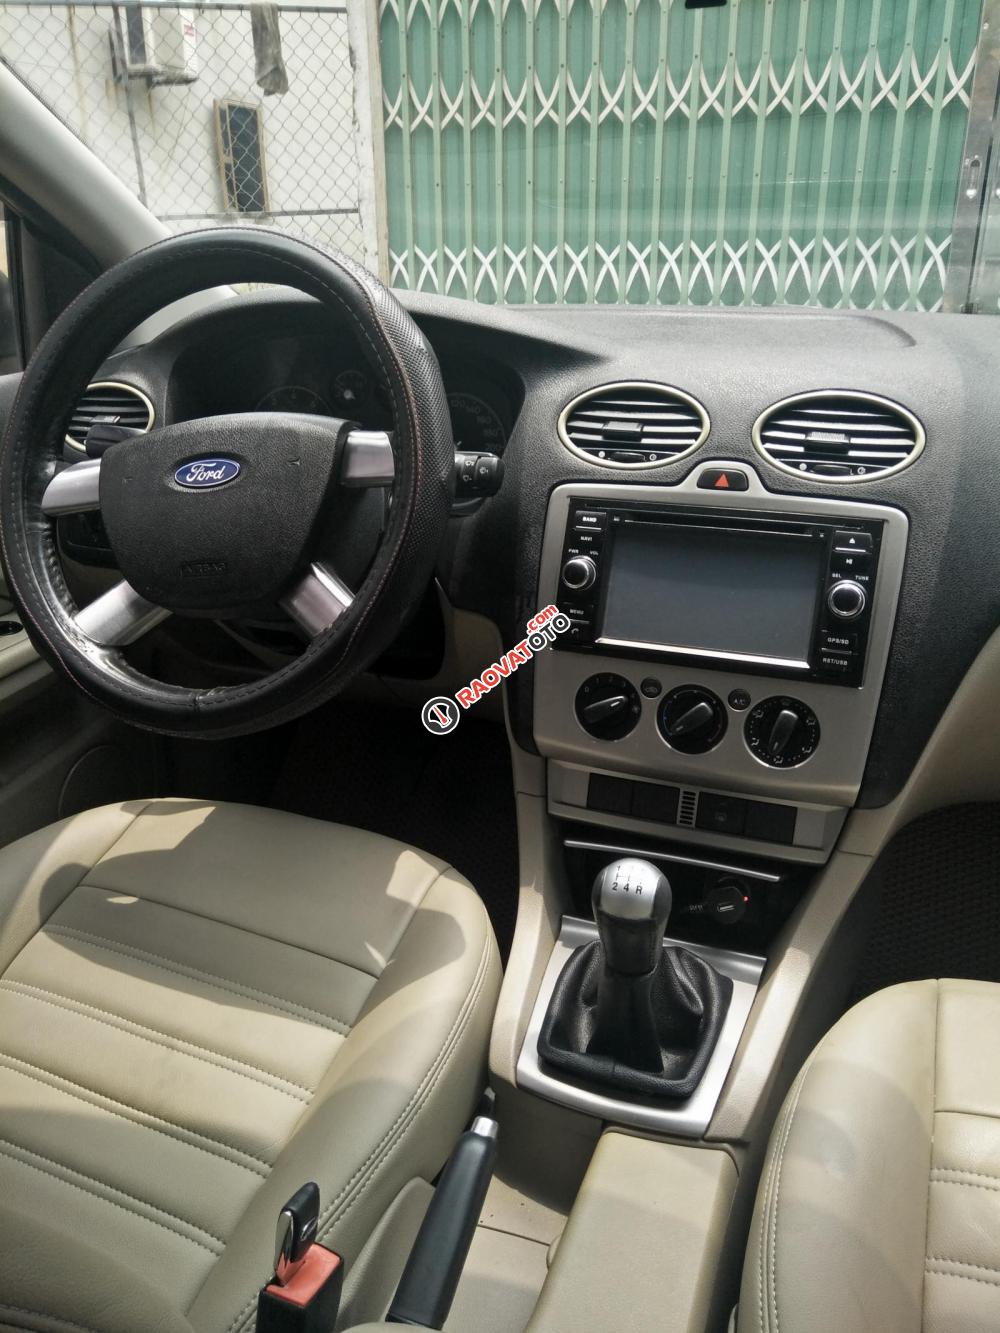 Cần bán xe Ford Focus 1.8MT sx 2009, màu đen, chính chủ làm công chức chạy ít, xe còn mới 95%, giá 265 triệu-12